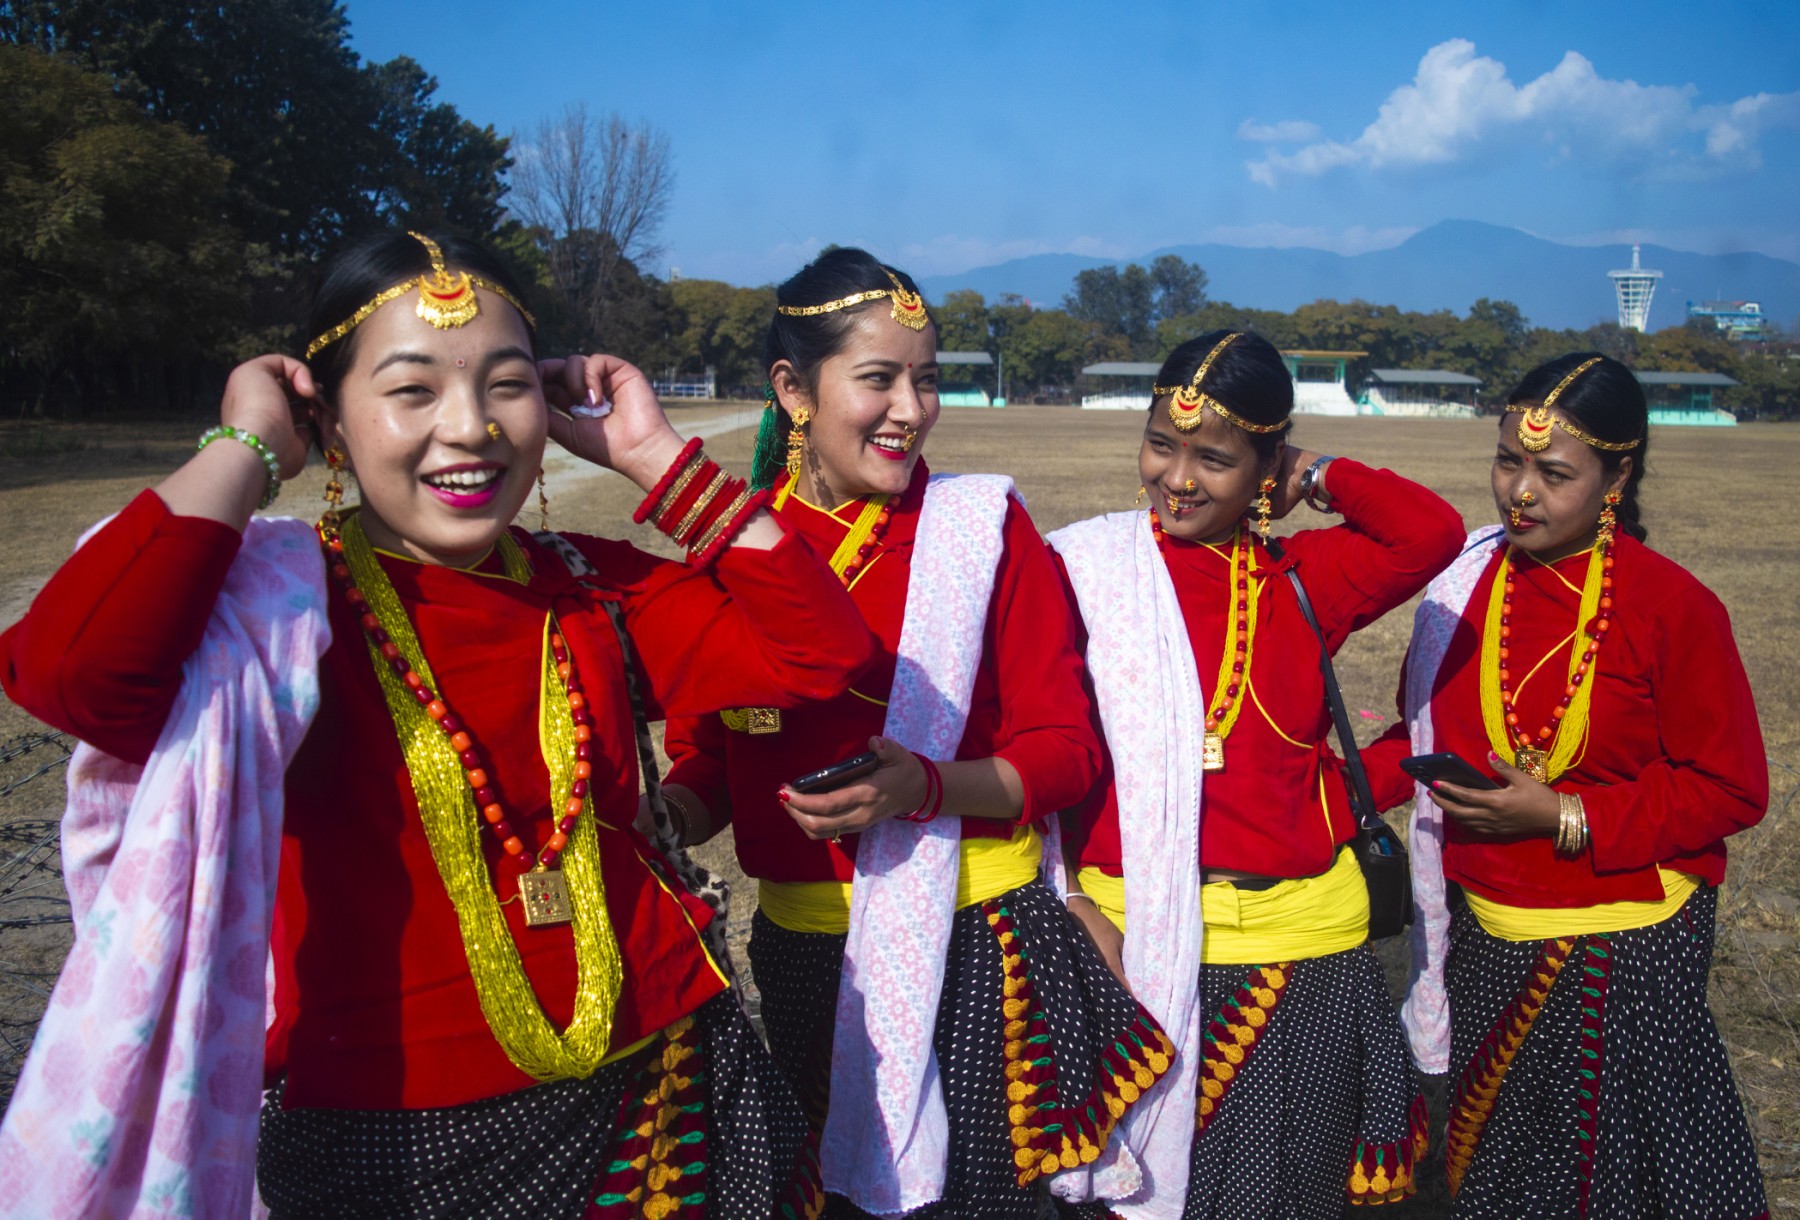 In Pictures: Rai community celebrates Sakela festival